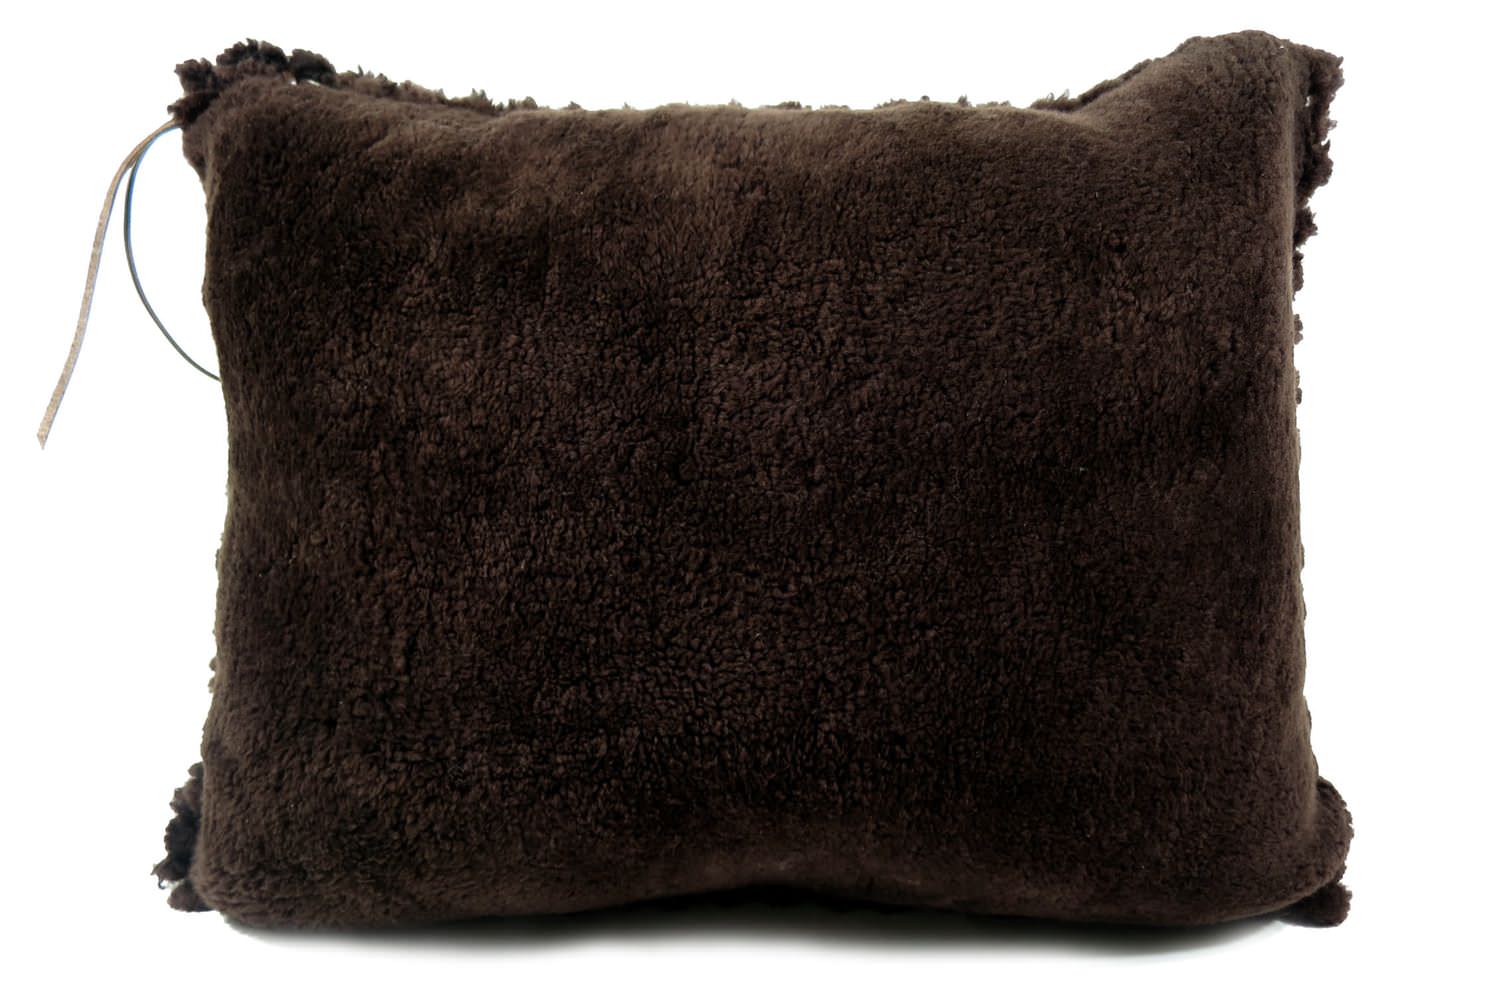 mouton-cushion-68-52